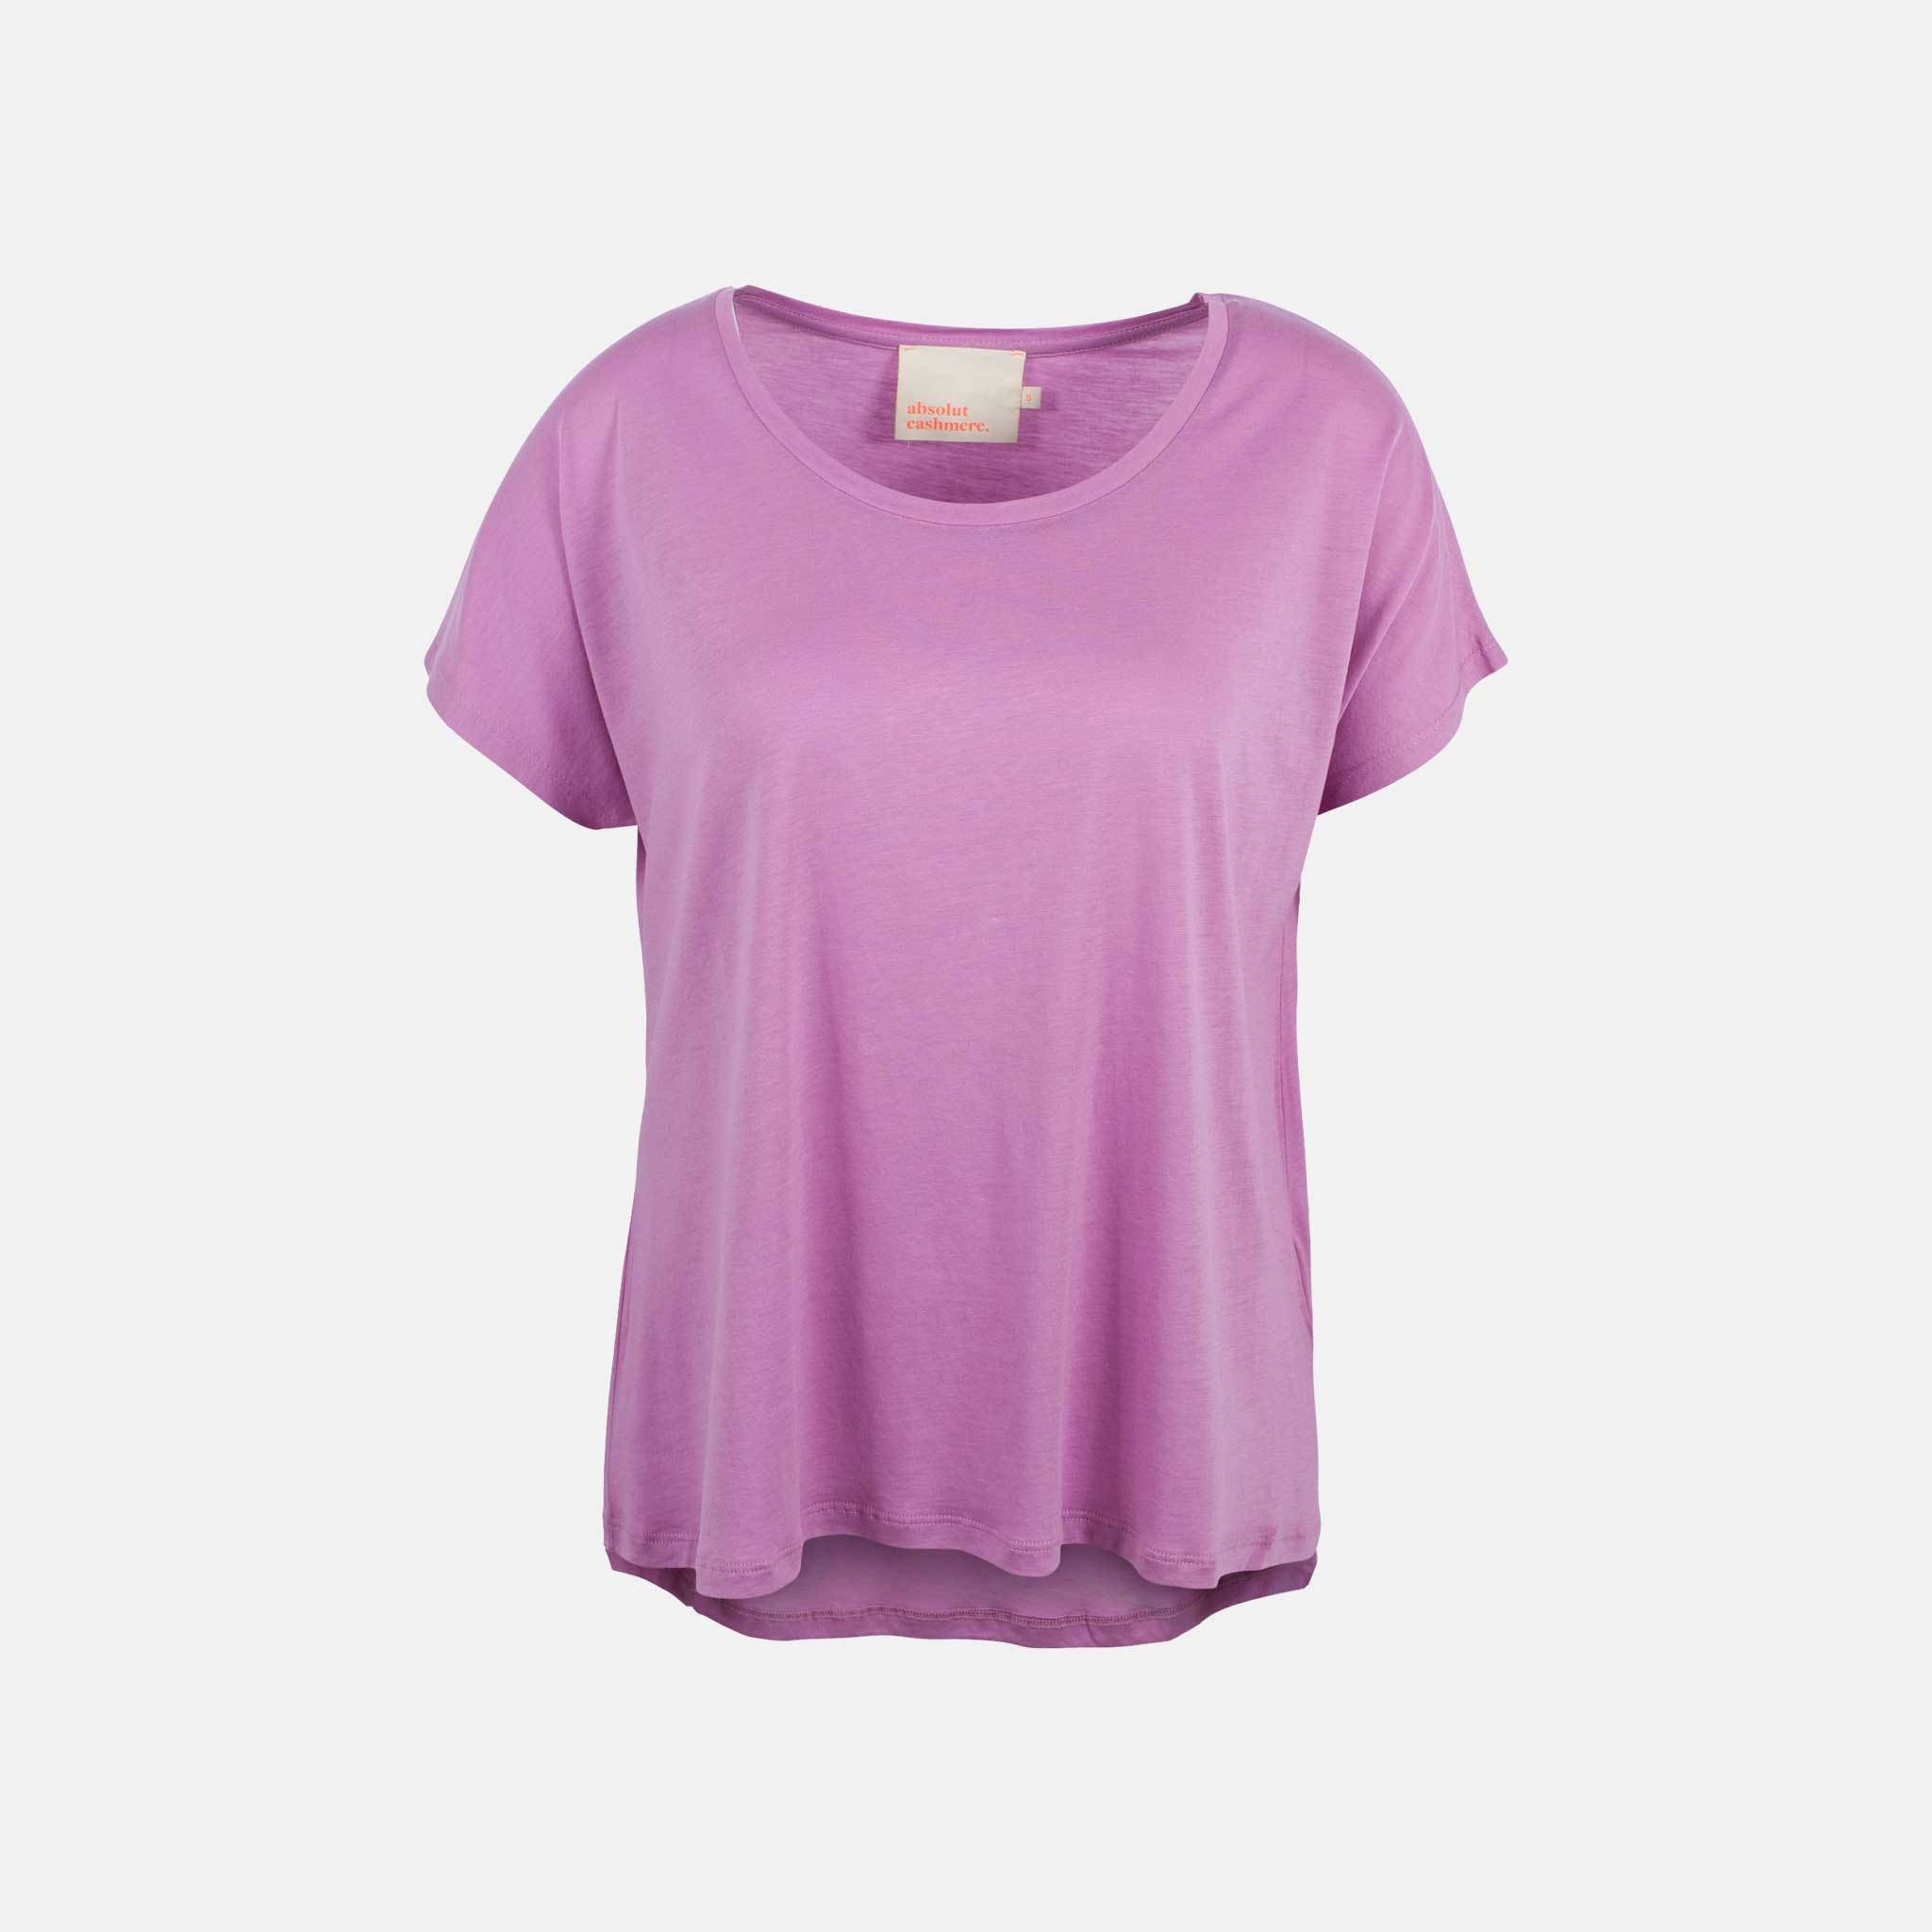 Absolut Cashmere Shirt Elise vorne | rosenholz